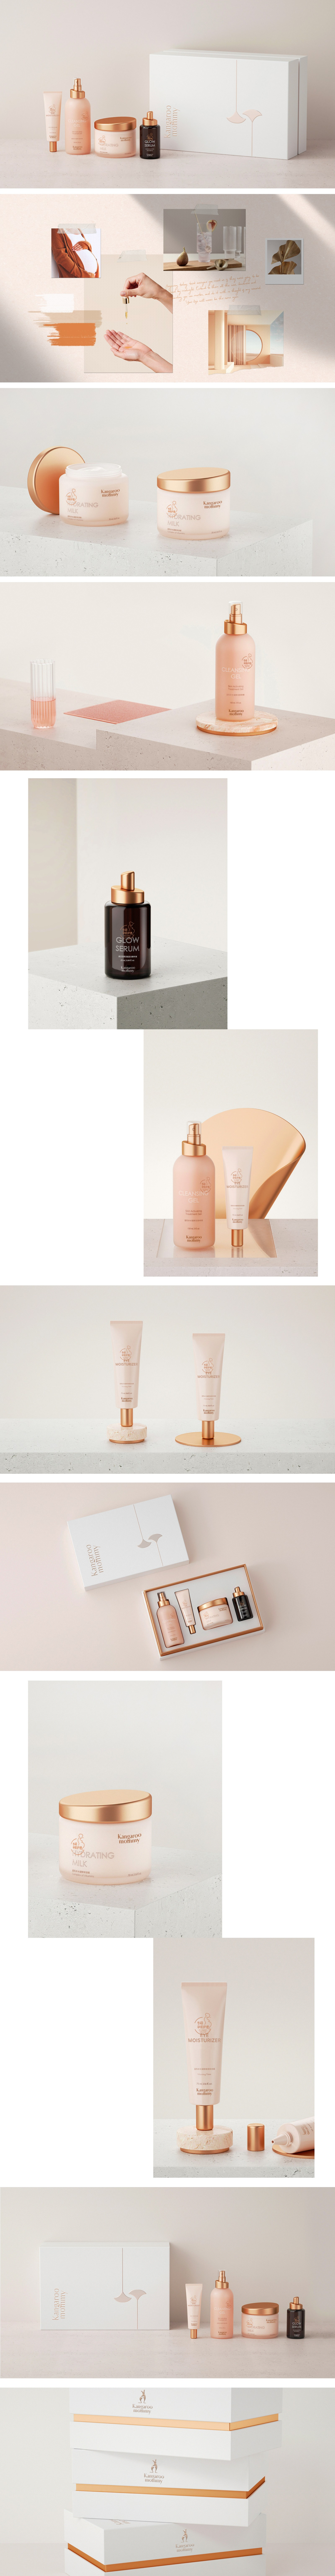 孕婦護膚品牌策劃設計-化妝品包裝設計-杭州達岸品牌策劃設計公司